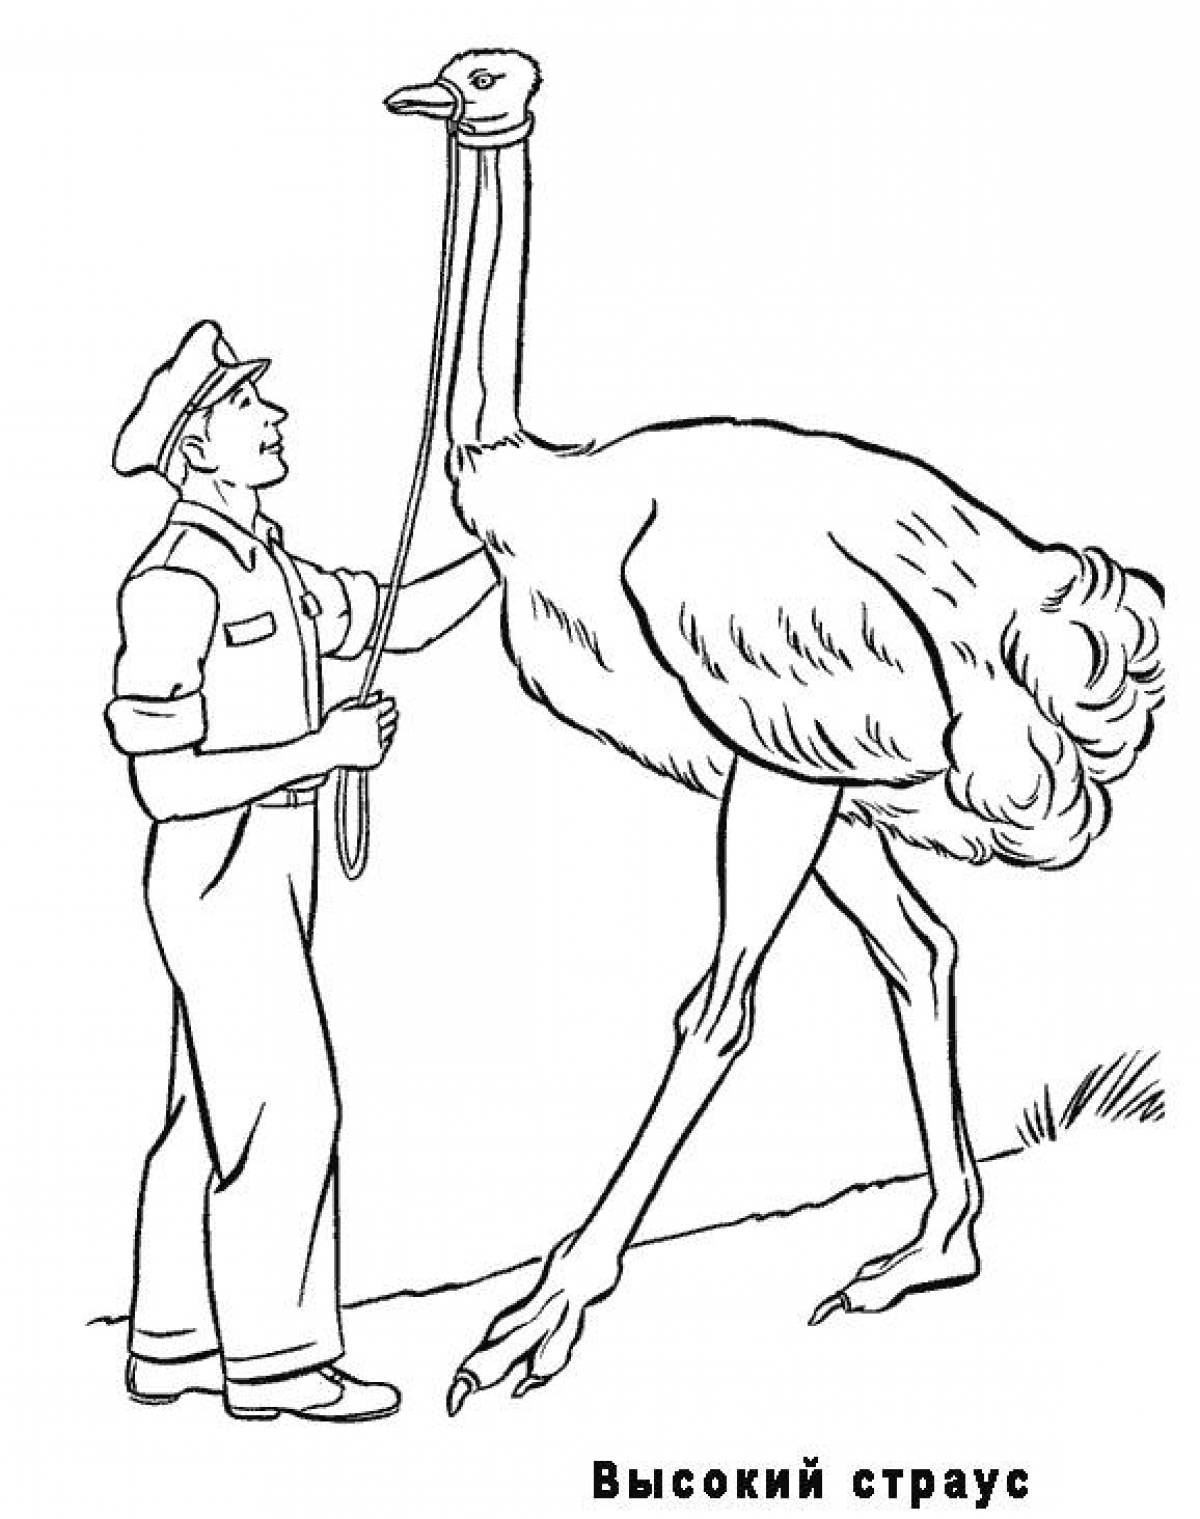 Tall ostrich